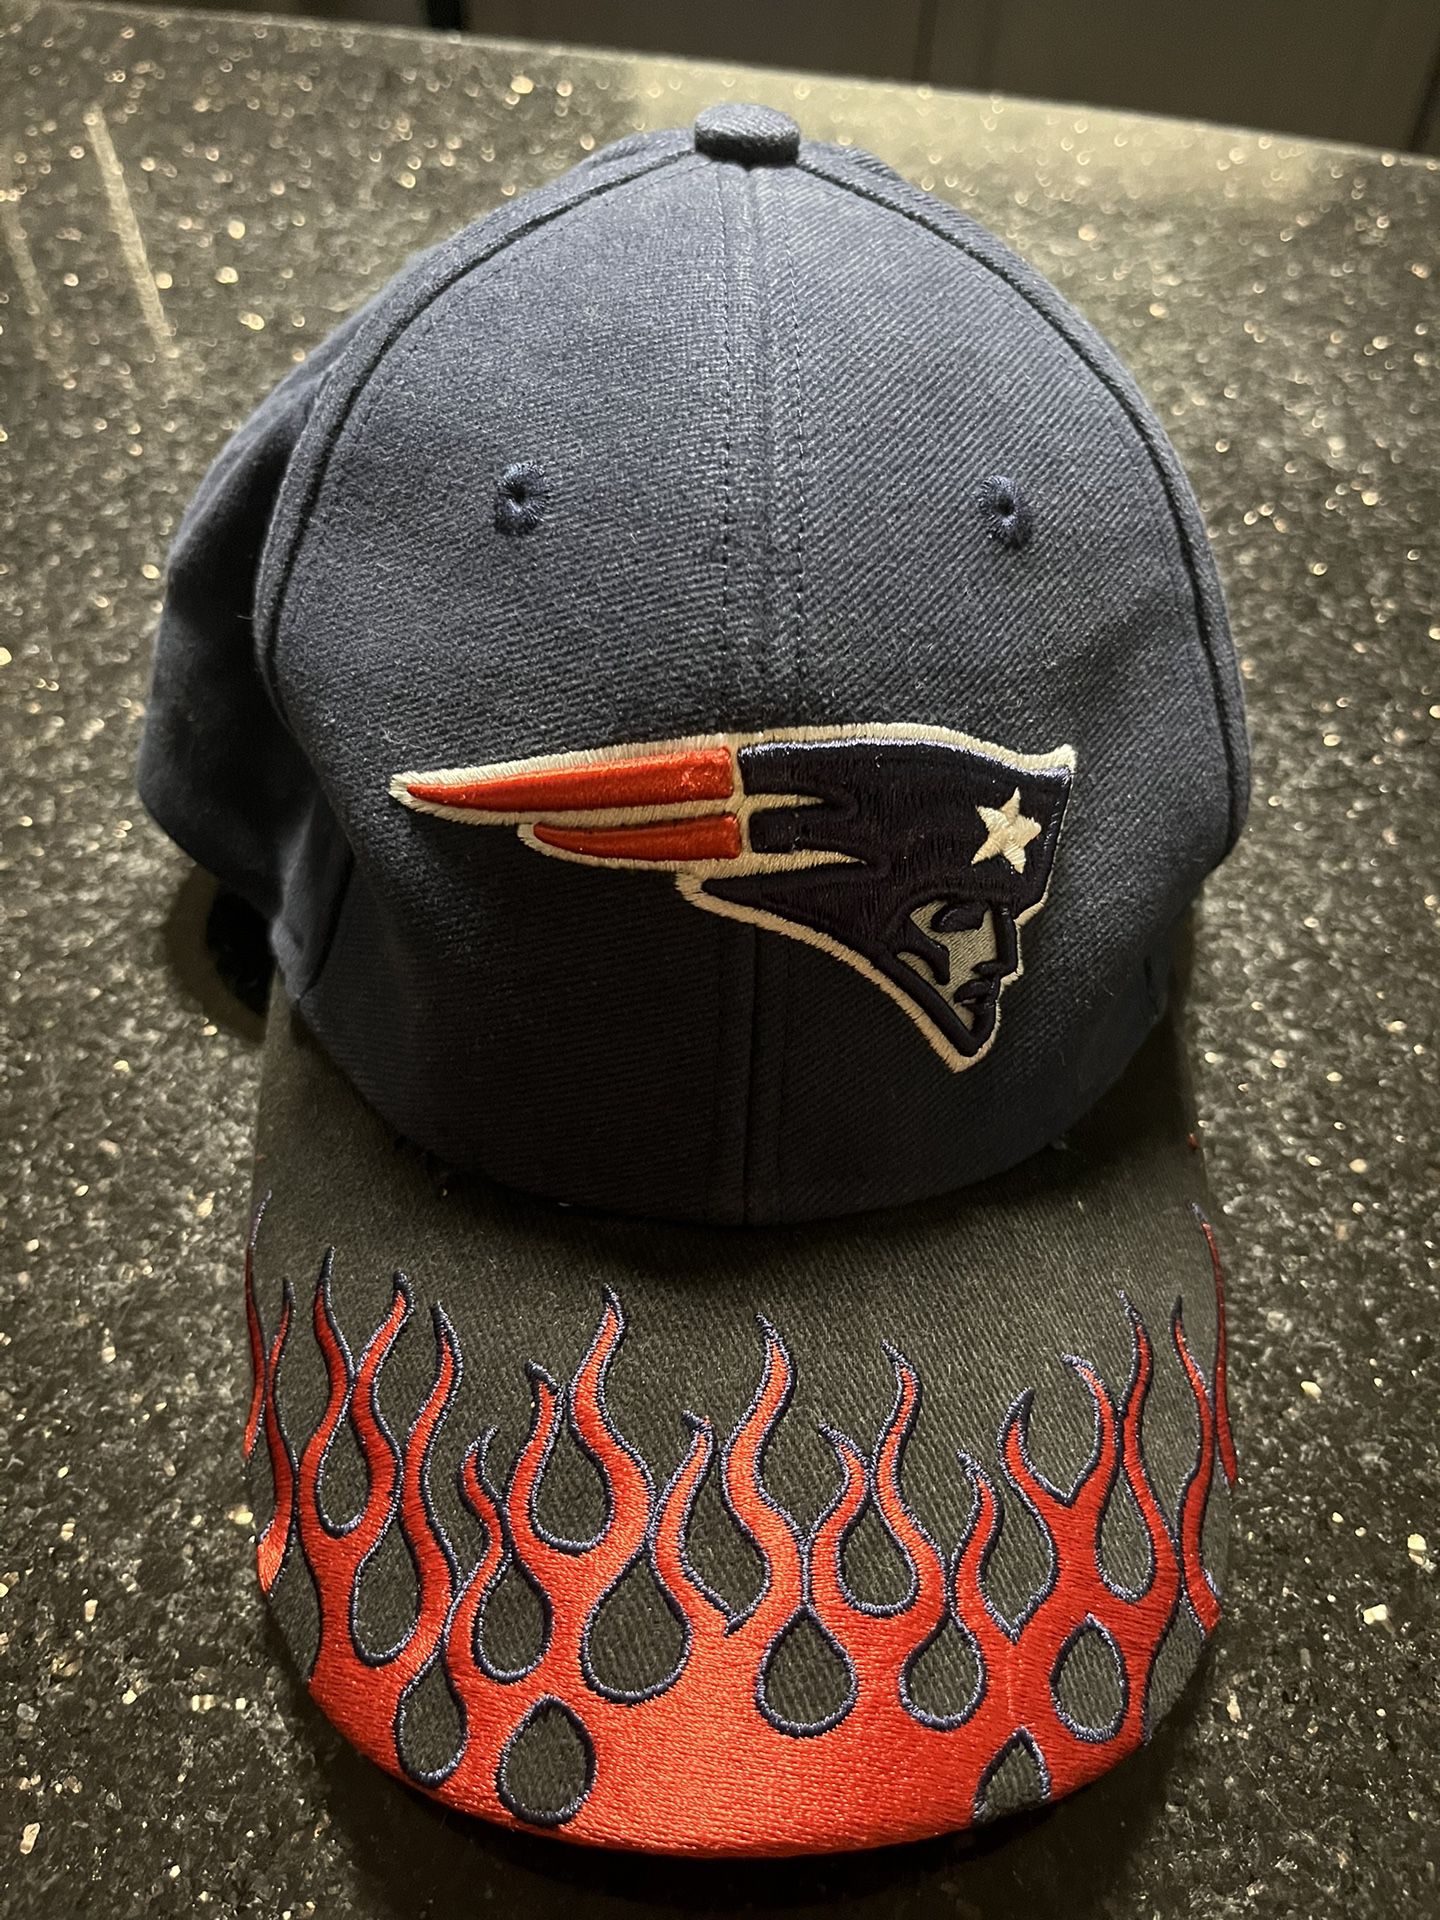 patriots hat old logo